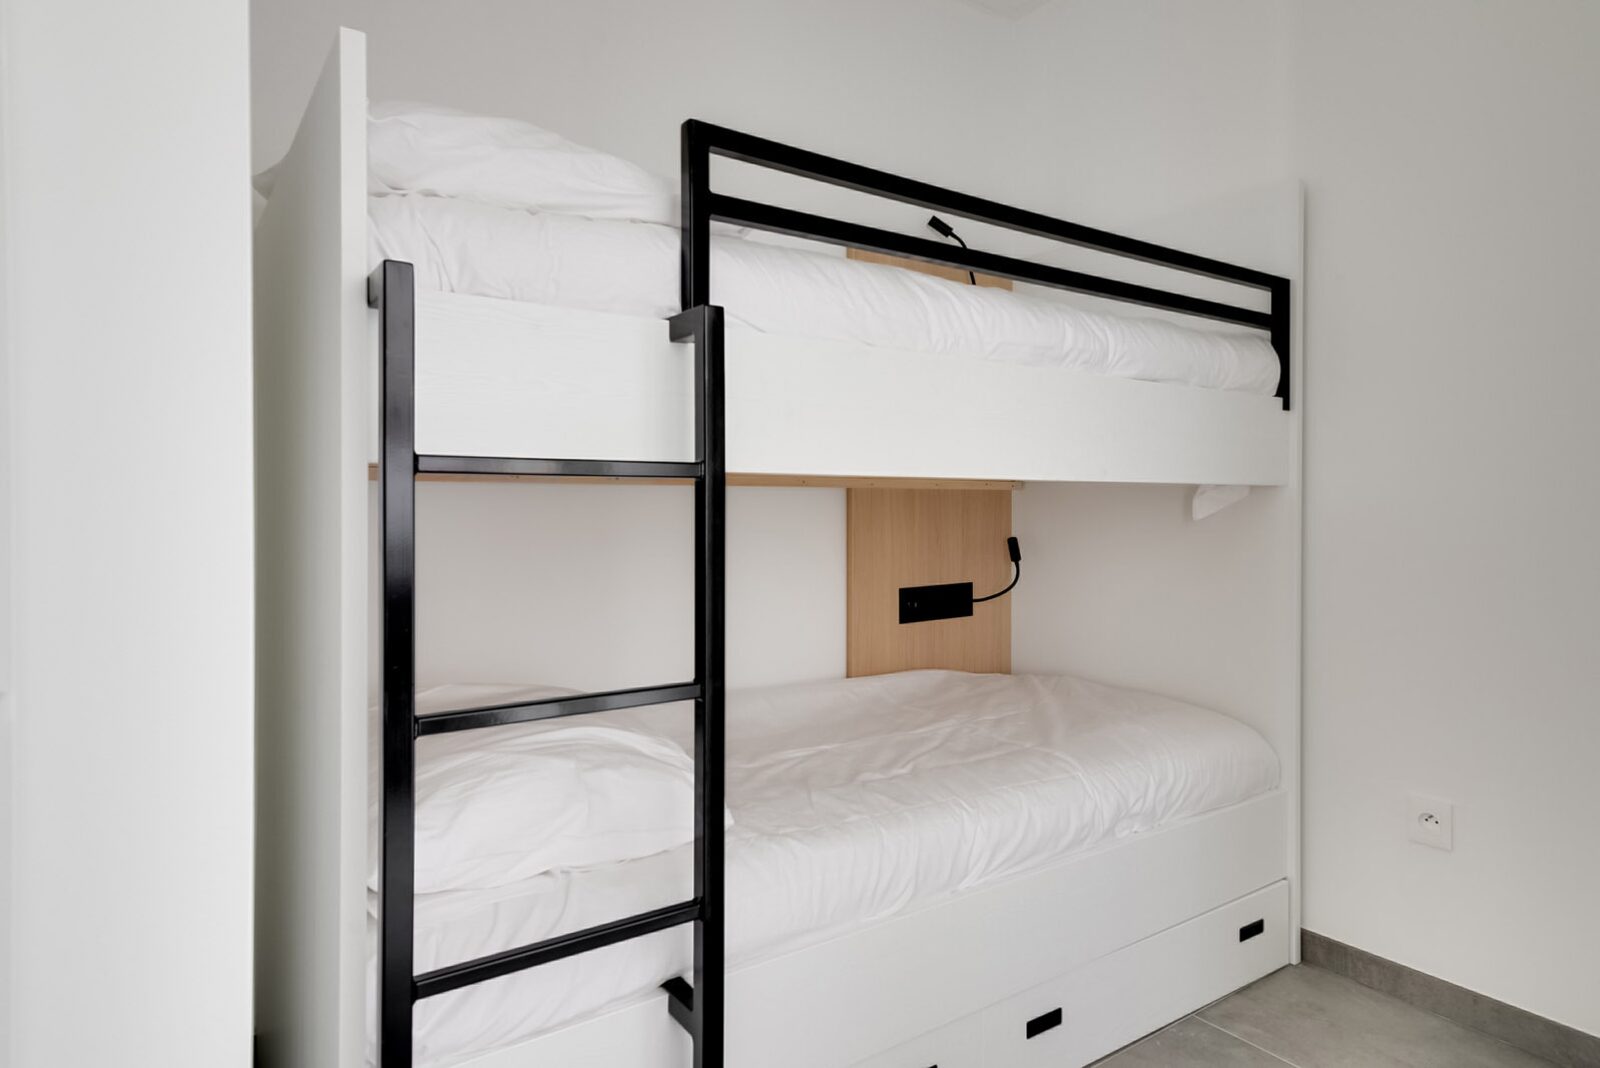 Appartement pour 4 personnes avec lit double et un lit superposé